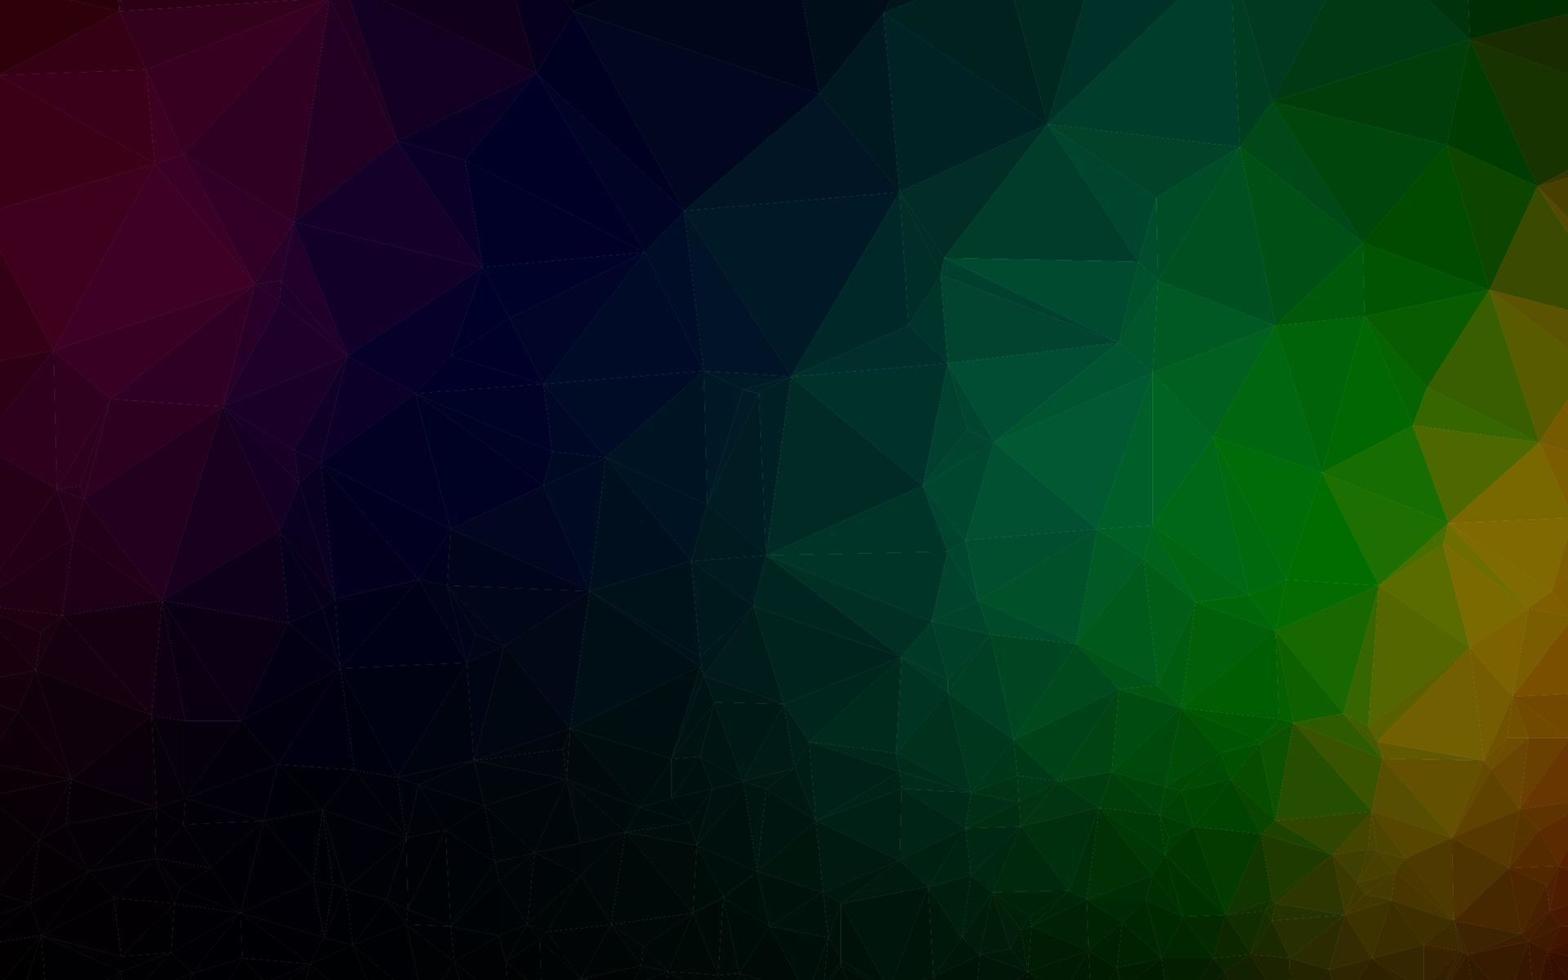 Dark Multicolor, Rainbow vector polygon abstract backdrop.